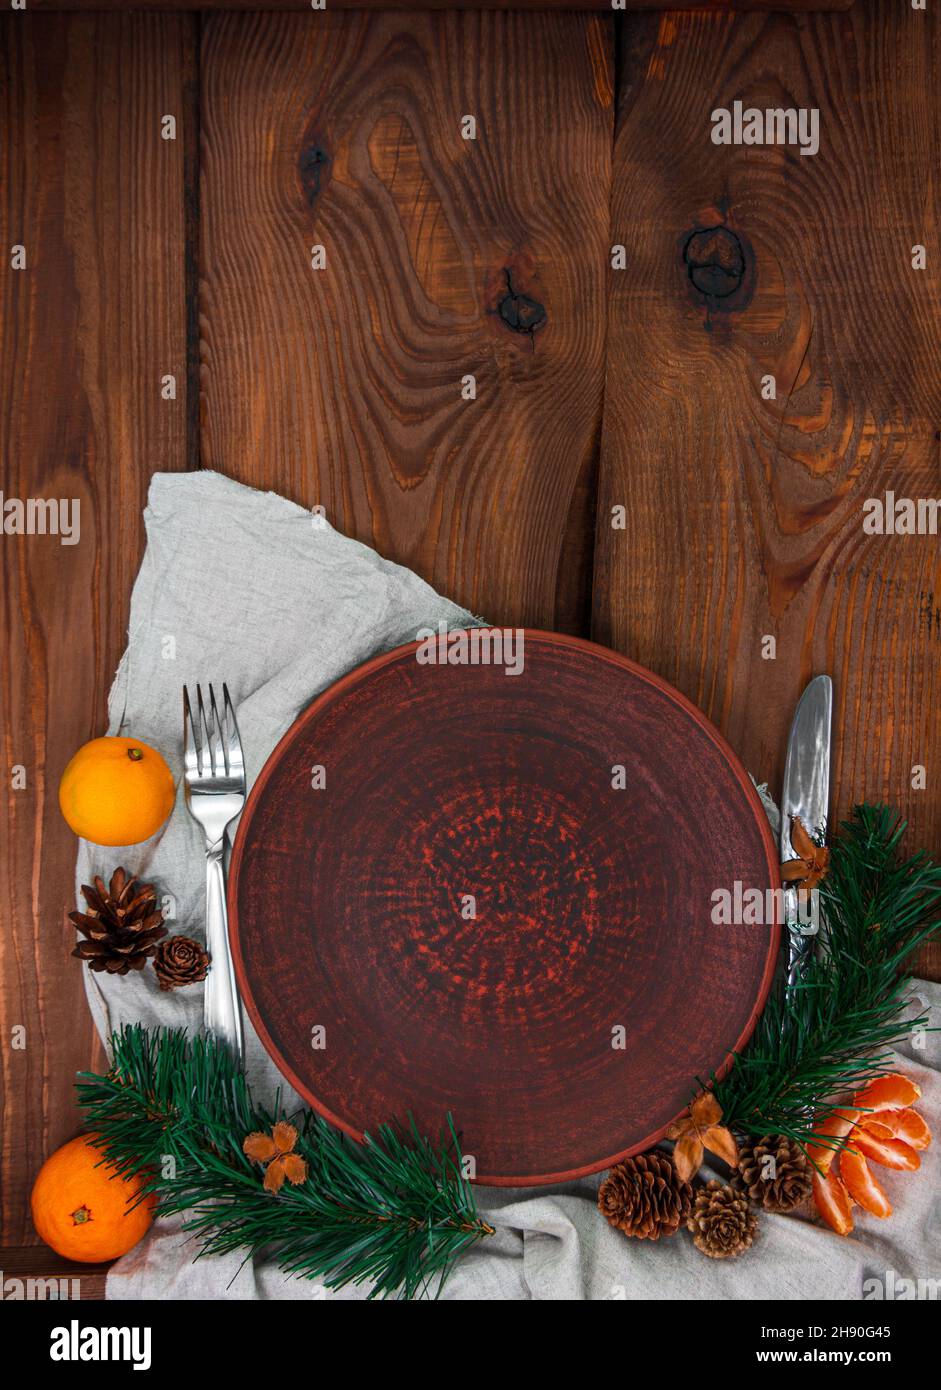 Weihnachten Menü Tisch Einstellung leere Tonplatte Tannenbaum Mandarinen festliche Veranstaltung Dekoration Leinen Tischdecke Geschirr Stockfoto